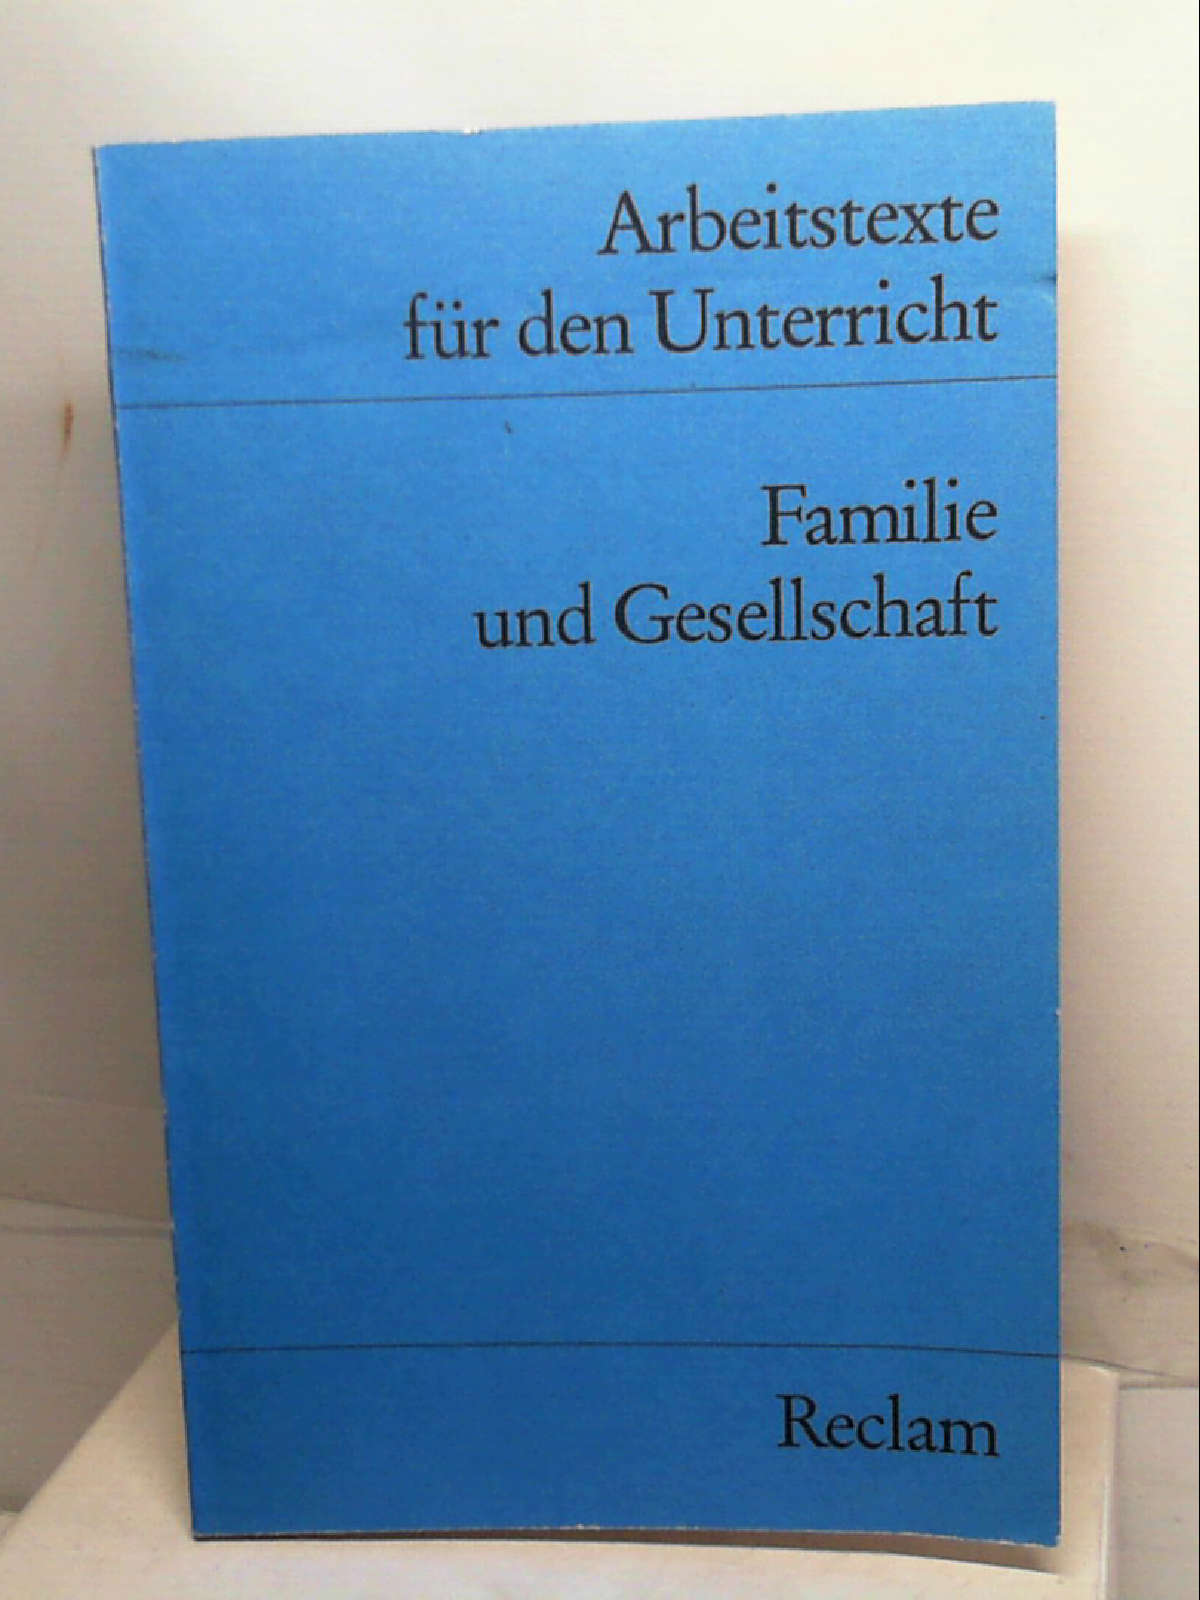 Familie und Gesellschaft. Arbeitstexte für den Unterricht. [Perfect Paperback] [Jan 01, 1991] Filser Franz Hrsg. - Filser Franz Hrsg.